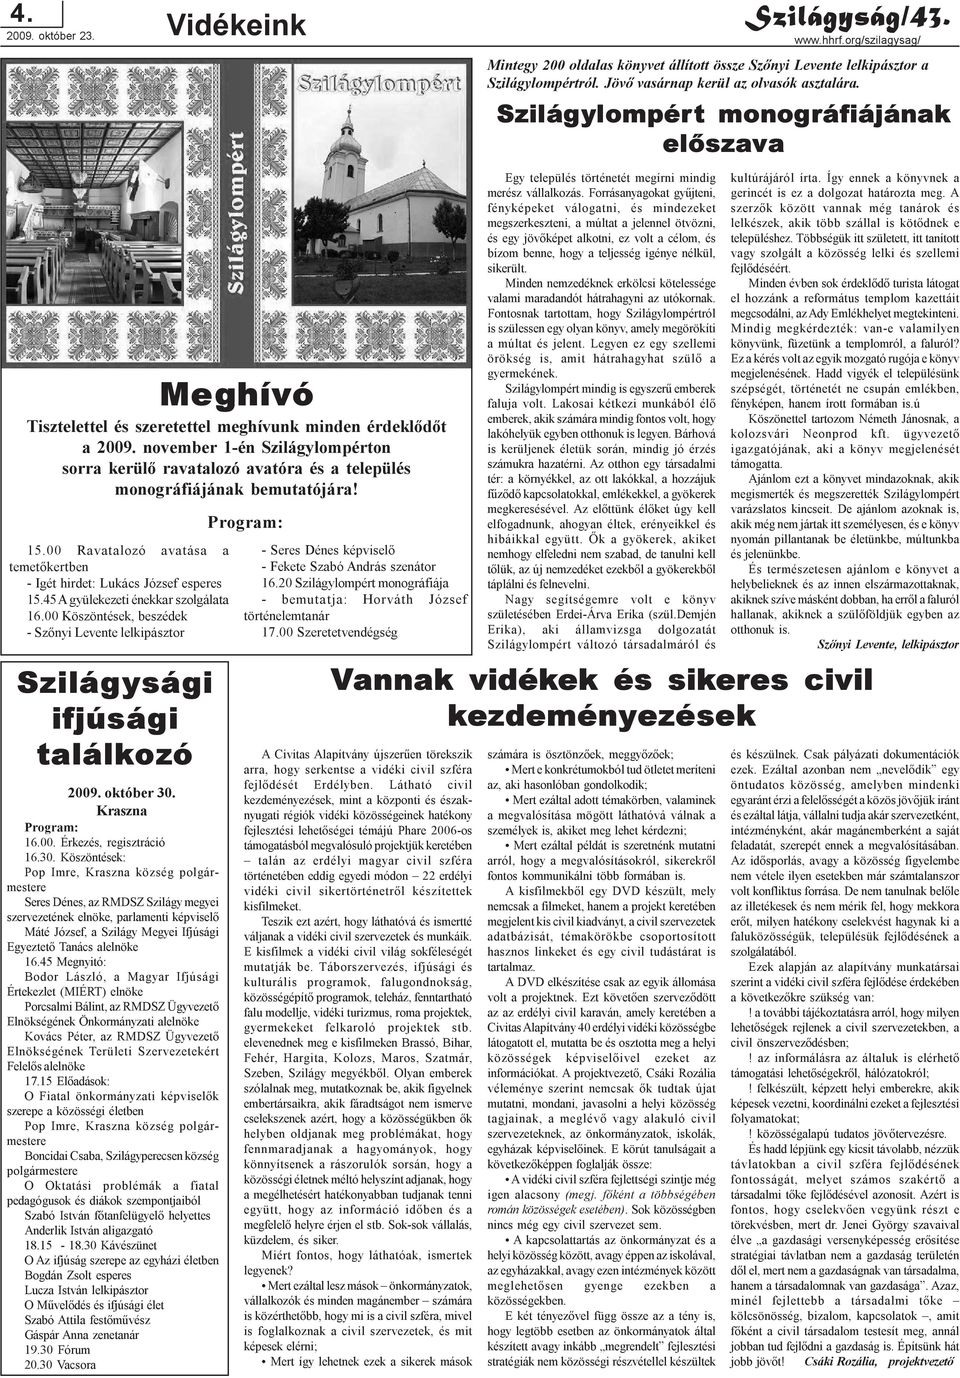 00 Köszöntések, beszédek - Szõnyi Levente lelkipásztor 2009. október 30.